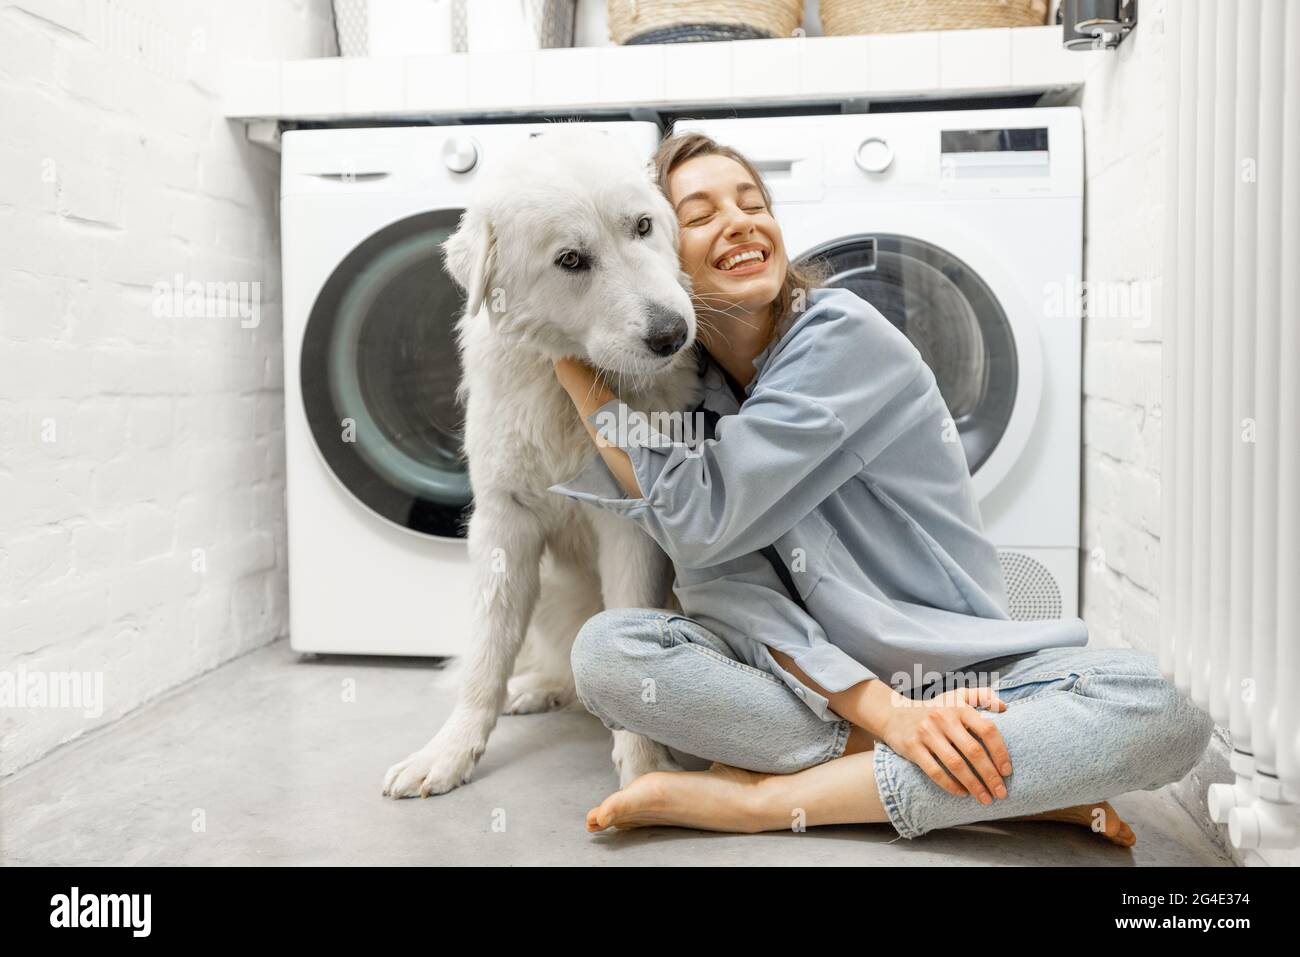 poses de perro pedigrí en la lavandería con lavadora y pila de ropa sucia  en la cesta. interior de la habitación doméstica. pared blanca. plancha  para planchar ropa limpia 9262346 Foto de